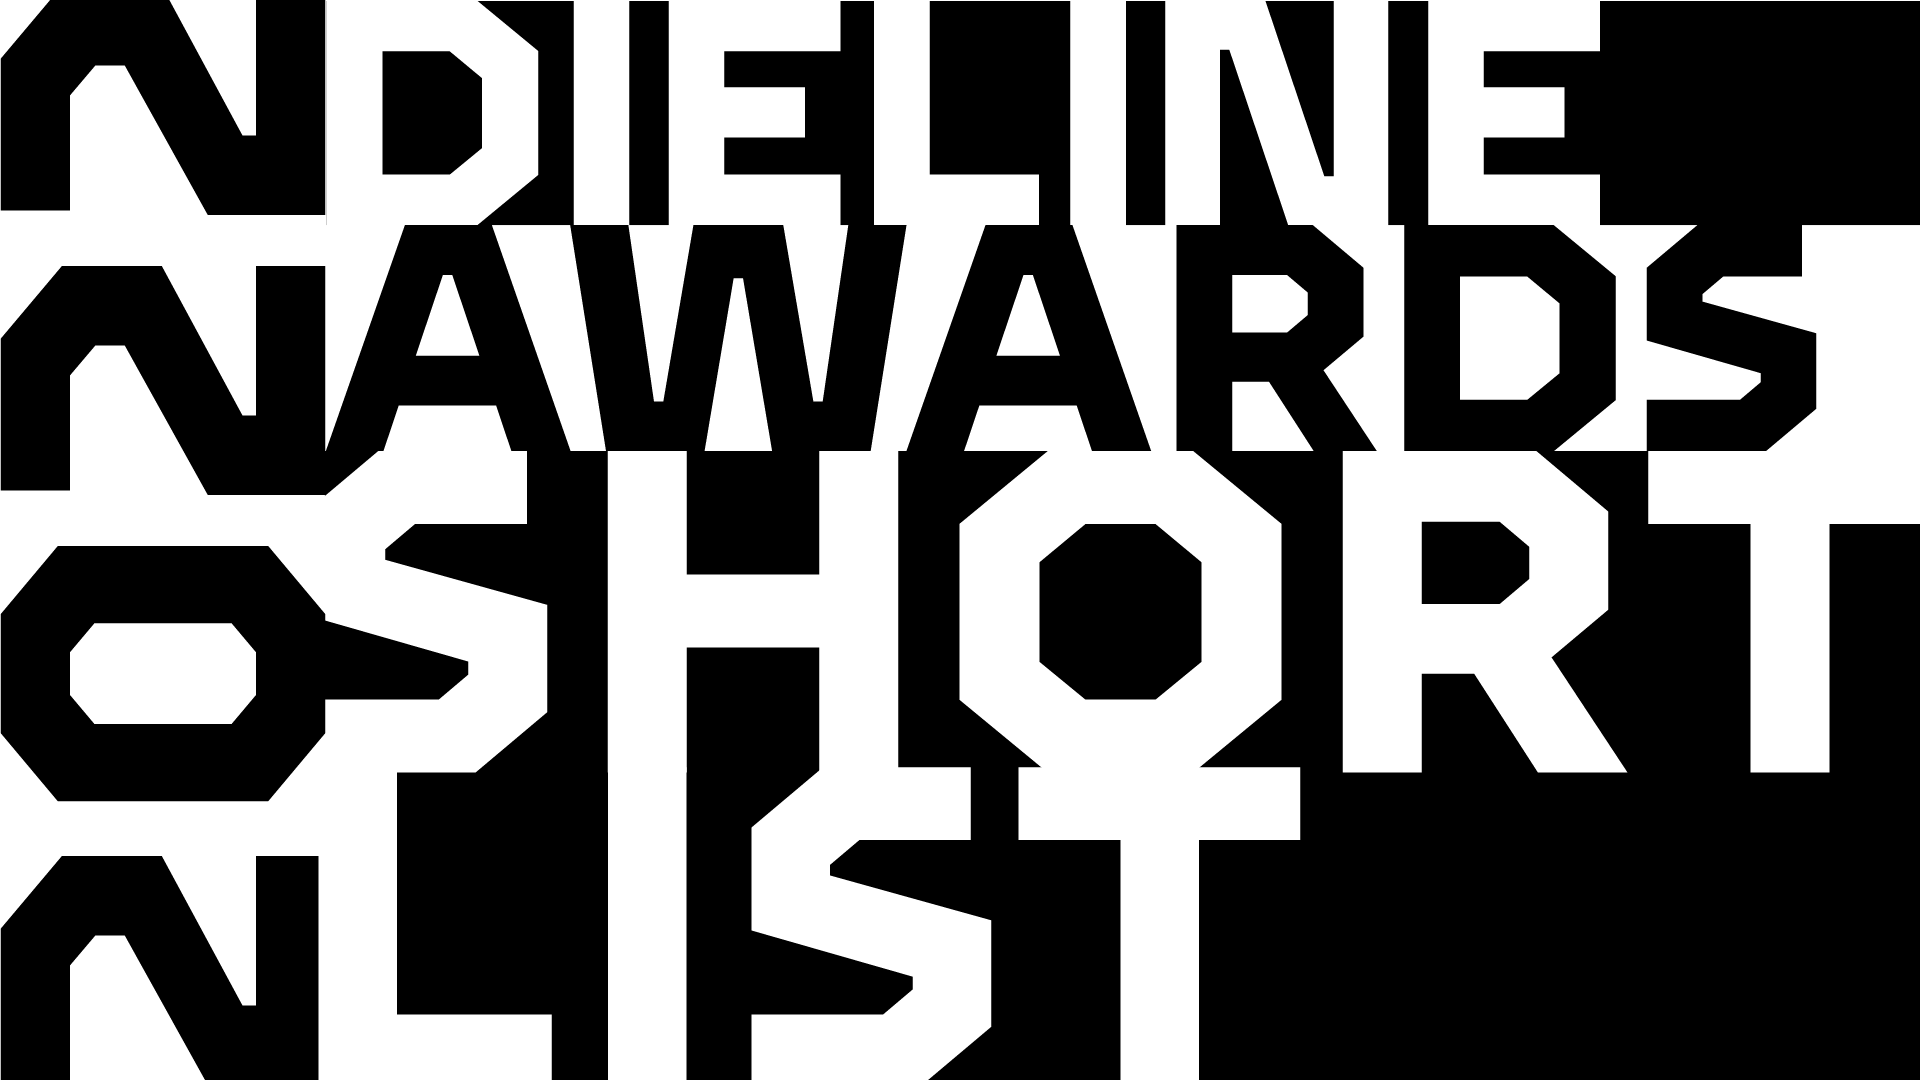 Presenting 2022 Dieline Awards Shortlist